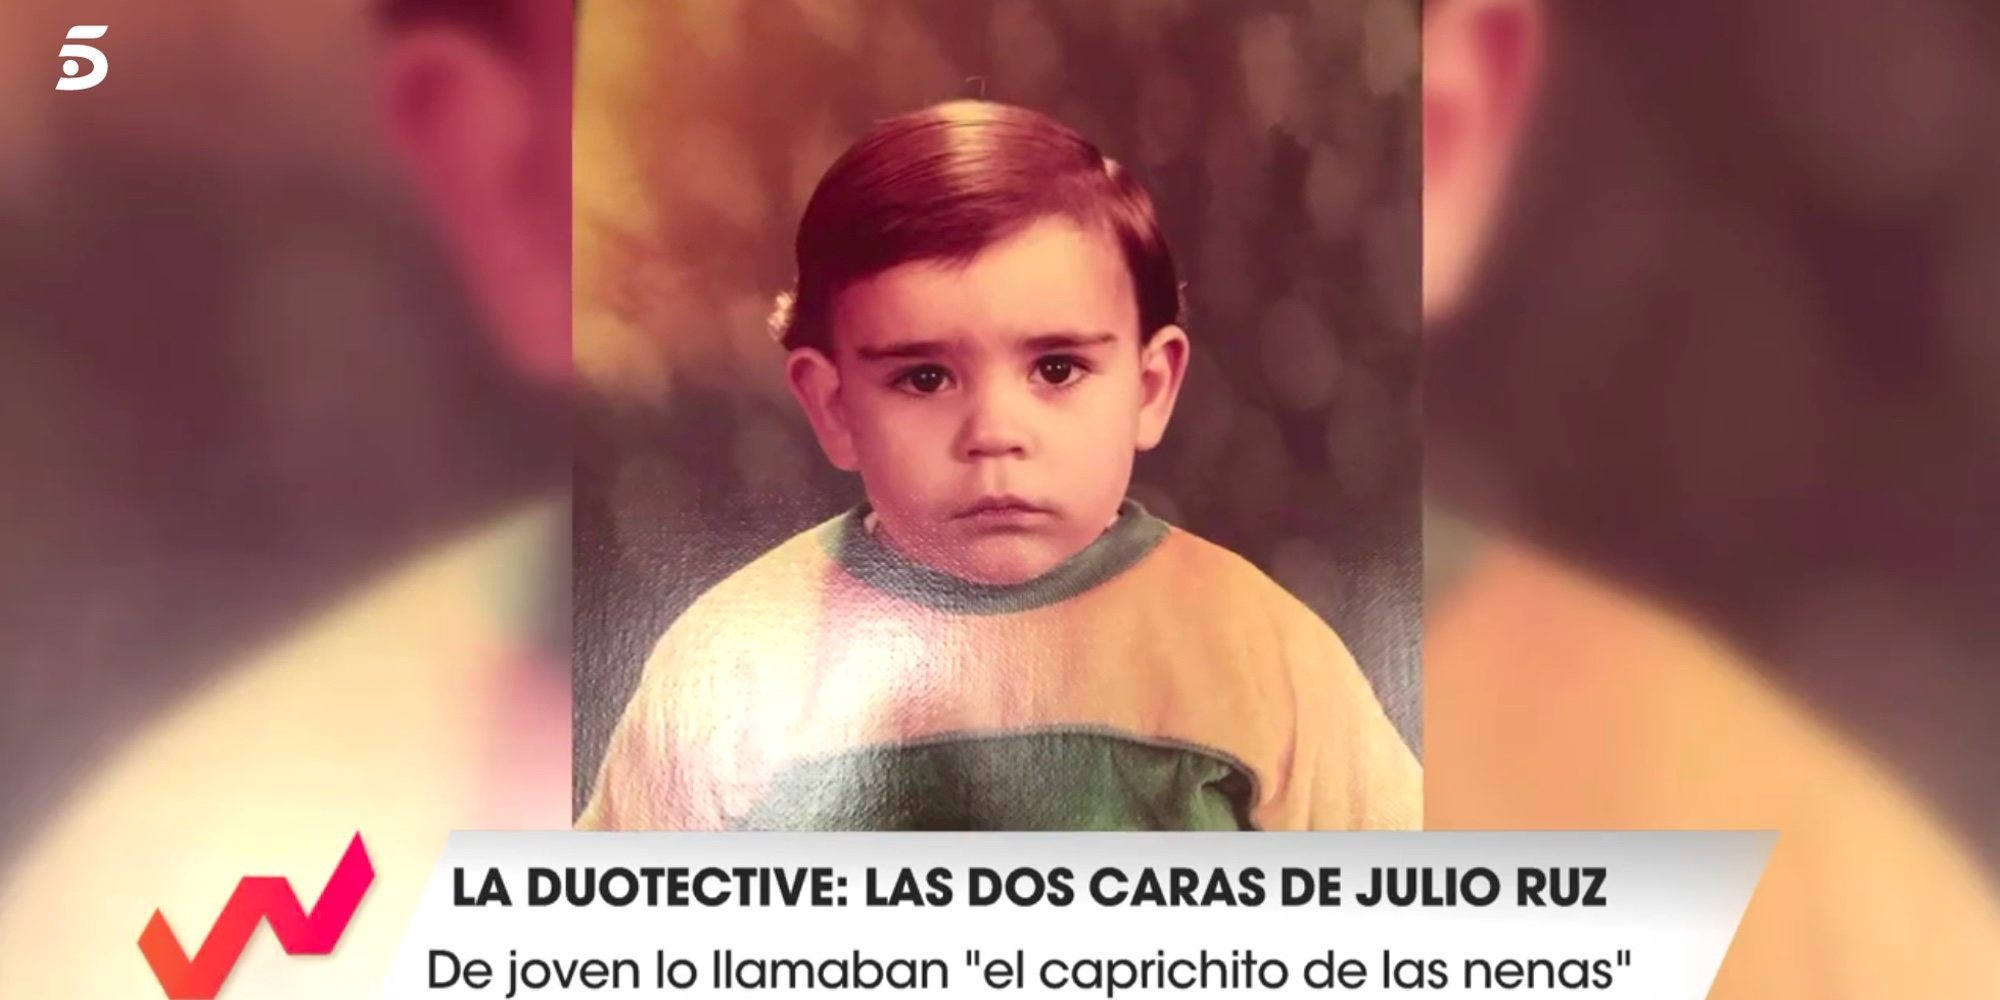 El pasado dandy de Julio Ruz: "Julito cañerín, el caprichito de las nenas" le llamaban en el instituto